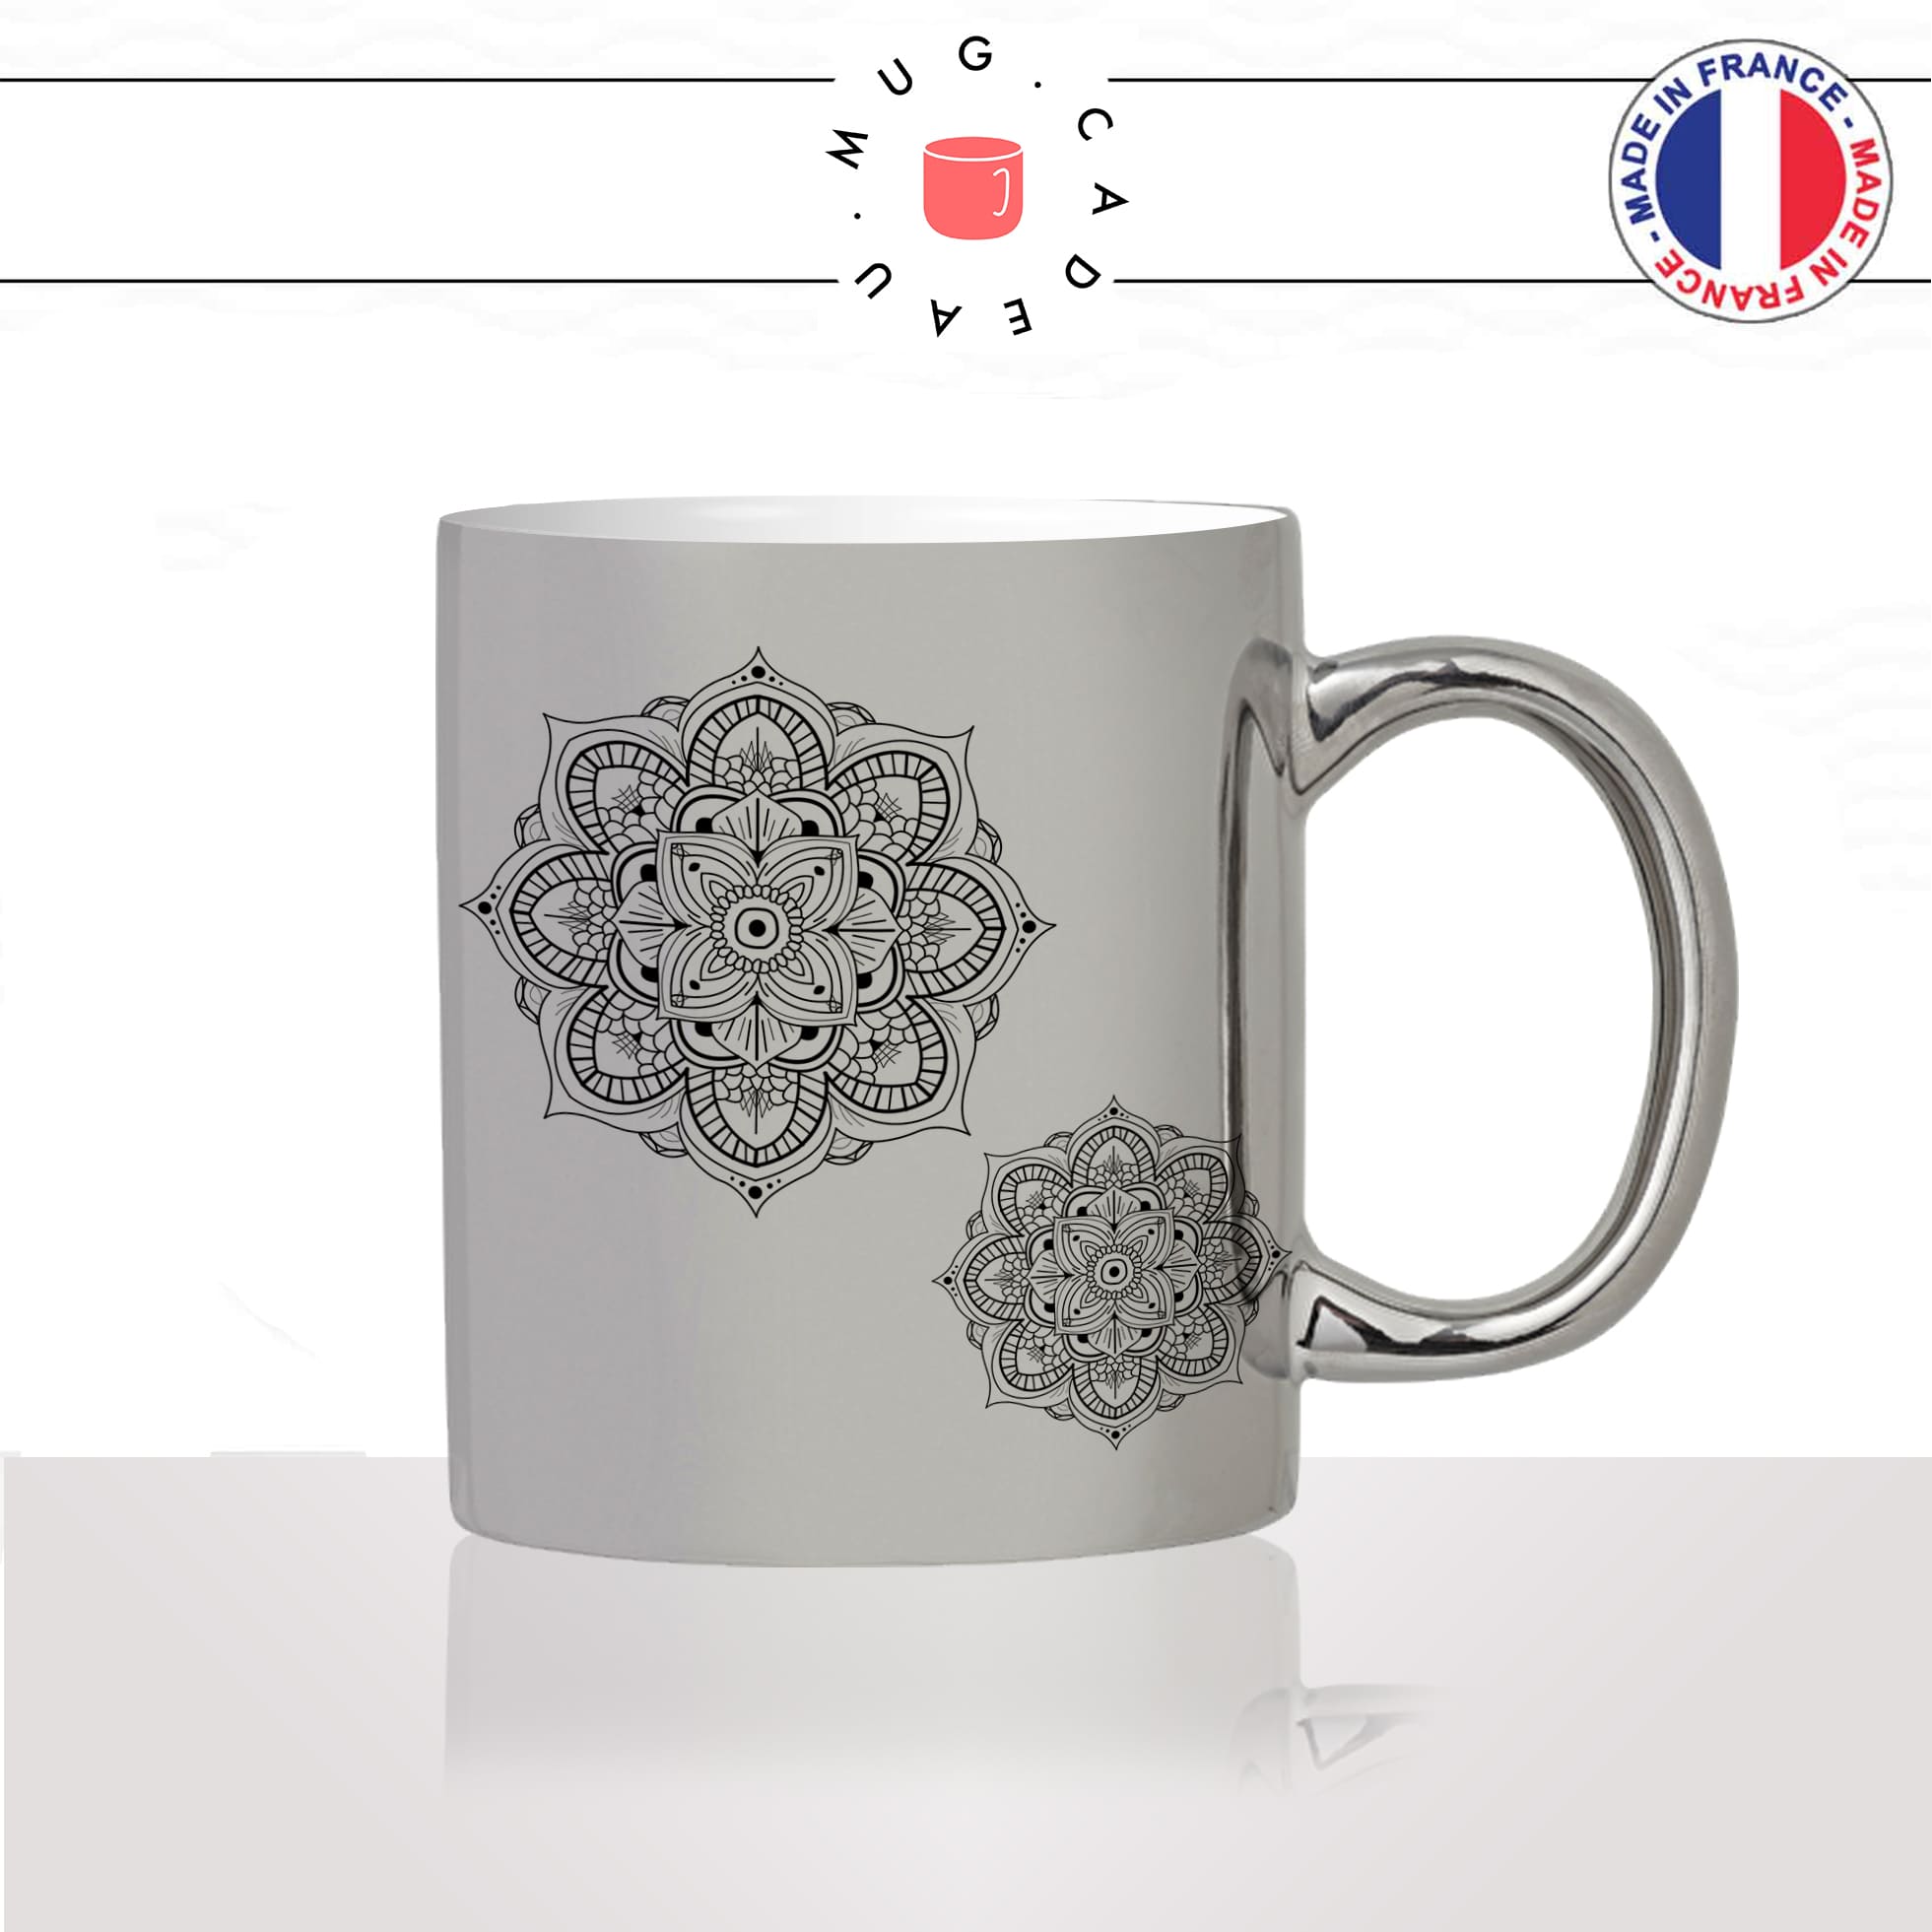 mug-tasse-argent-argenté-silver-fleur-fleurs-flower-double-mandala-bouddha-dessin-decoration-mignon-joli-idée-cadeau-fun-cool-café-thé2